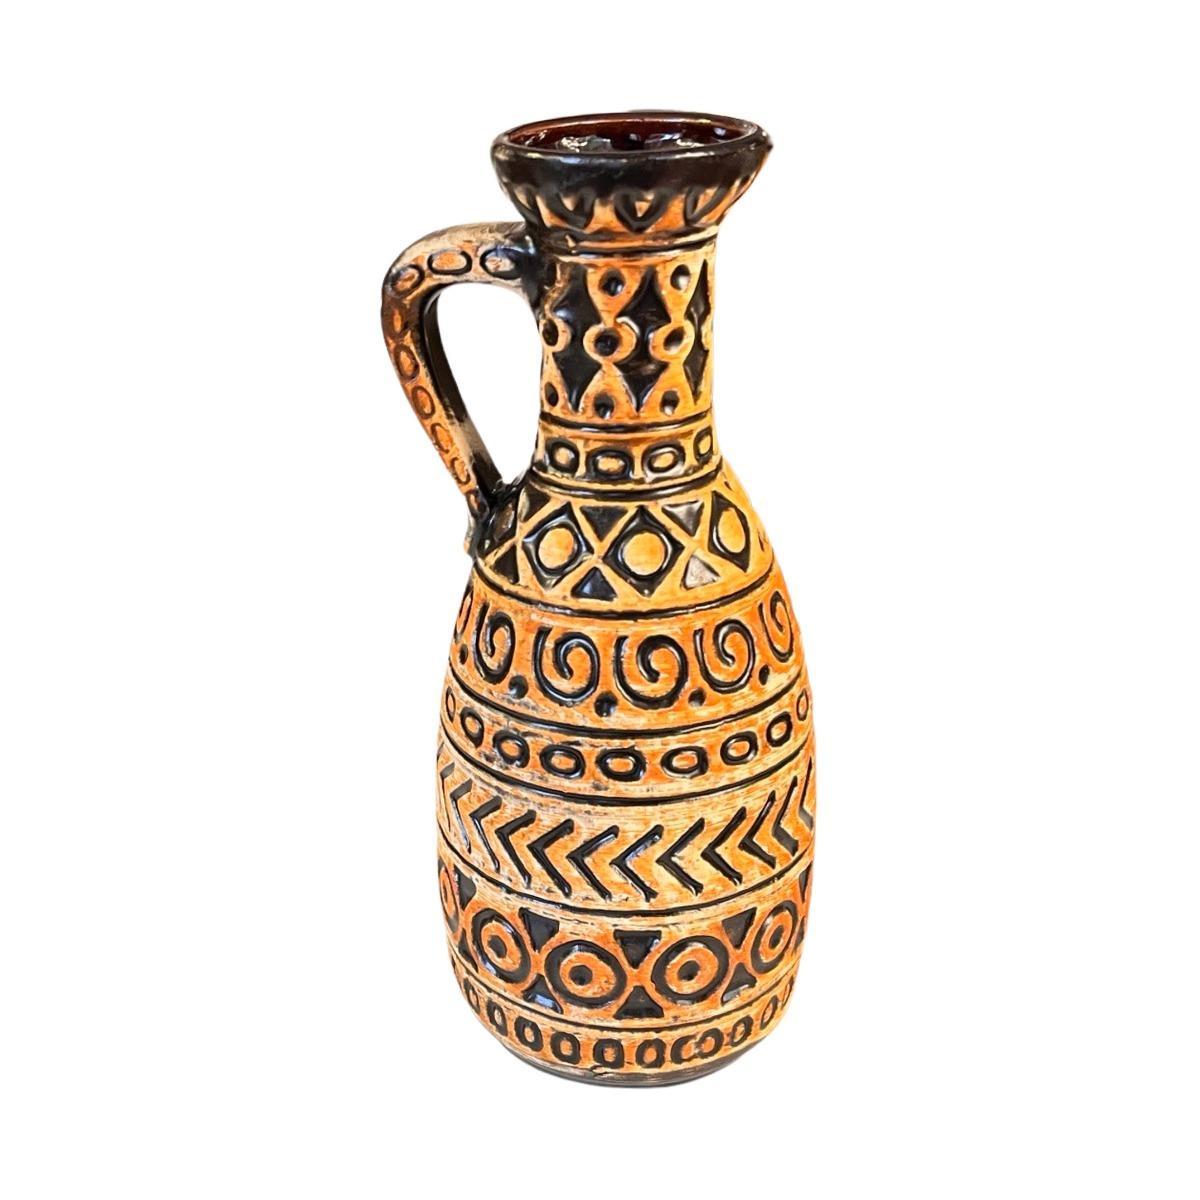 Wazon Bay Keramik 93 - 25 w kolorze ochry / czarnego, vintage Mid Century Modern, ceramika z Niemiec 5 Full Screen